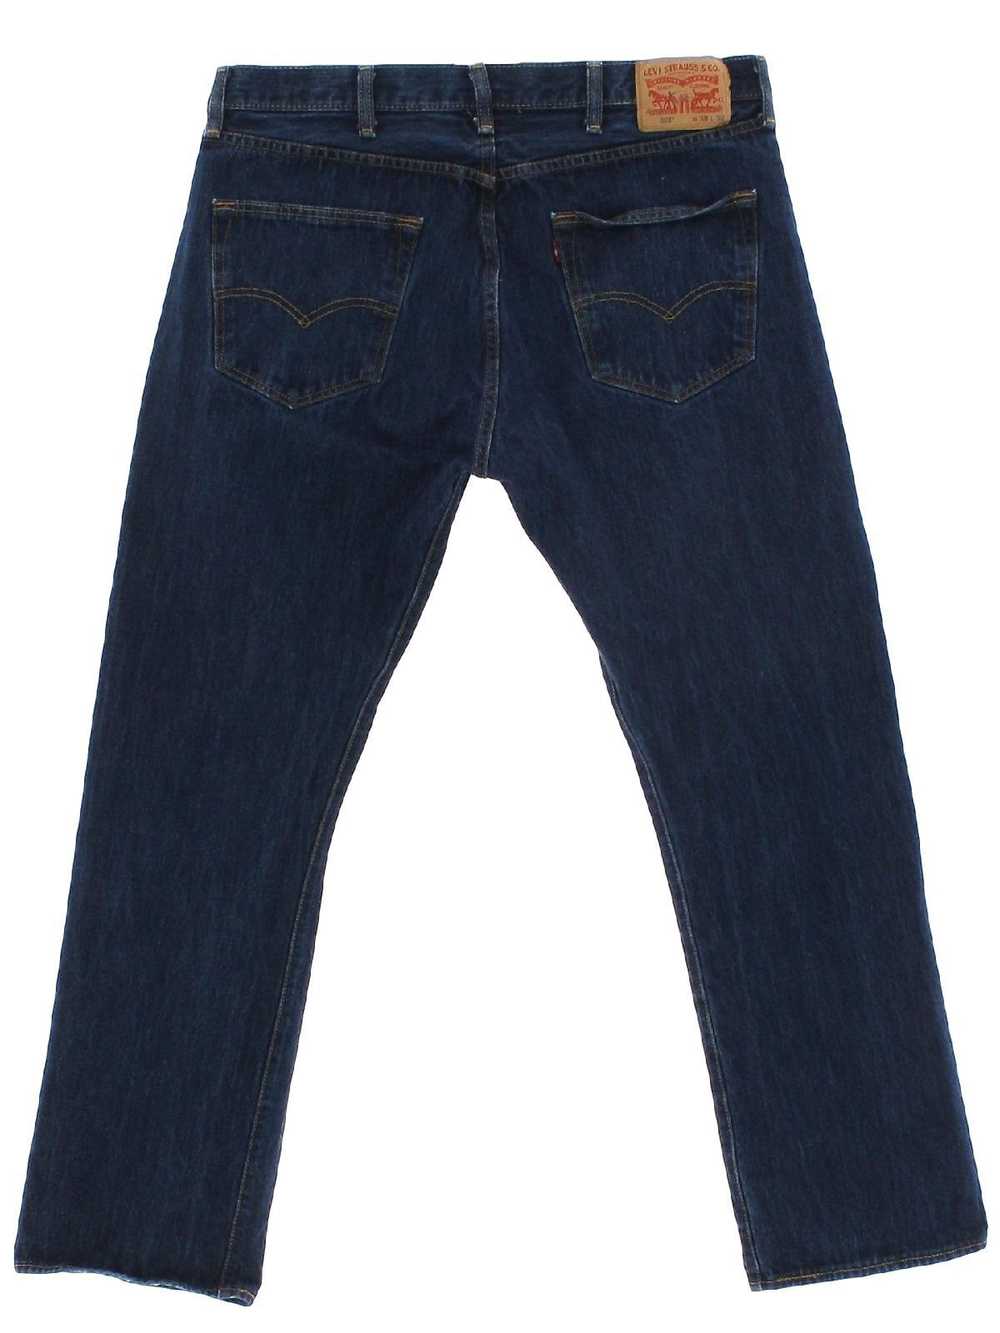 1990's Levis 501 Mens Levis 501s Denim Jeans Pants - image 1